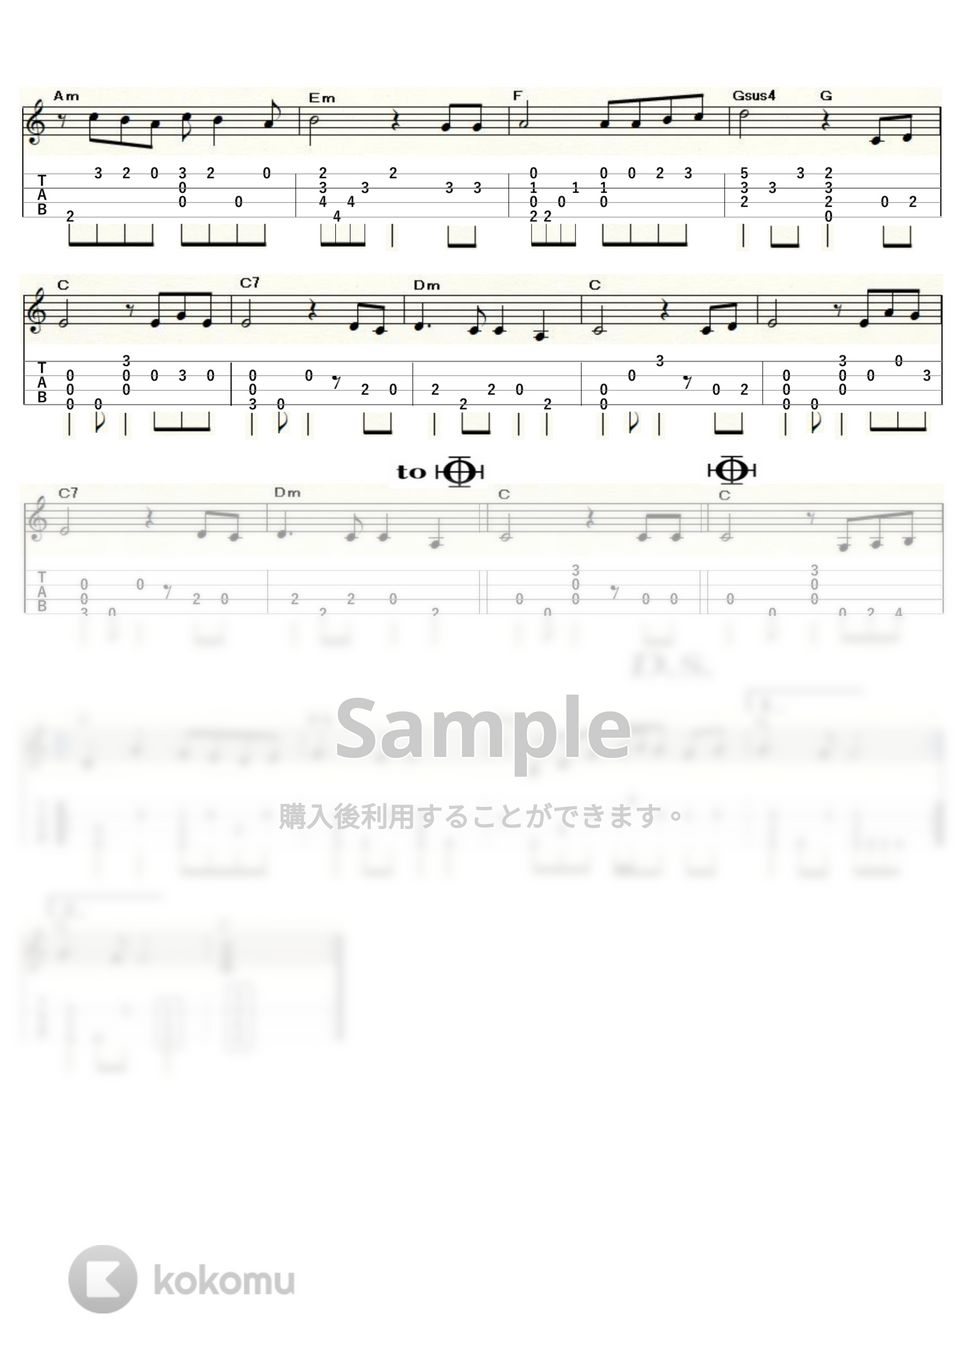 ズー・ニー・ヴー - 白いサンゴ礁 (ｳｸﾚﾚｿﾛ / Low-G / 中級) by ukulelepapa